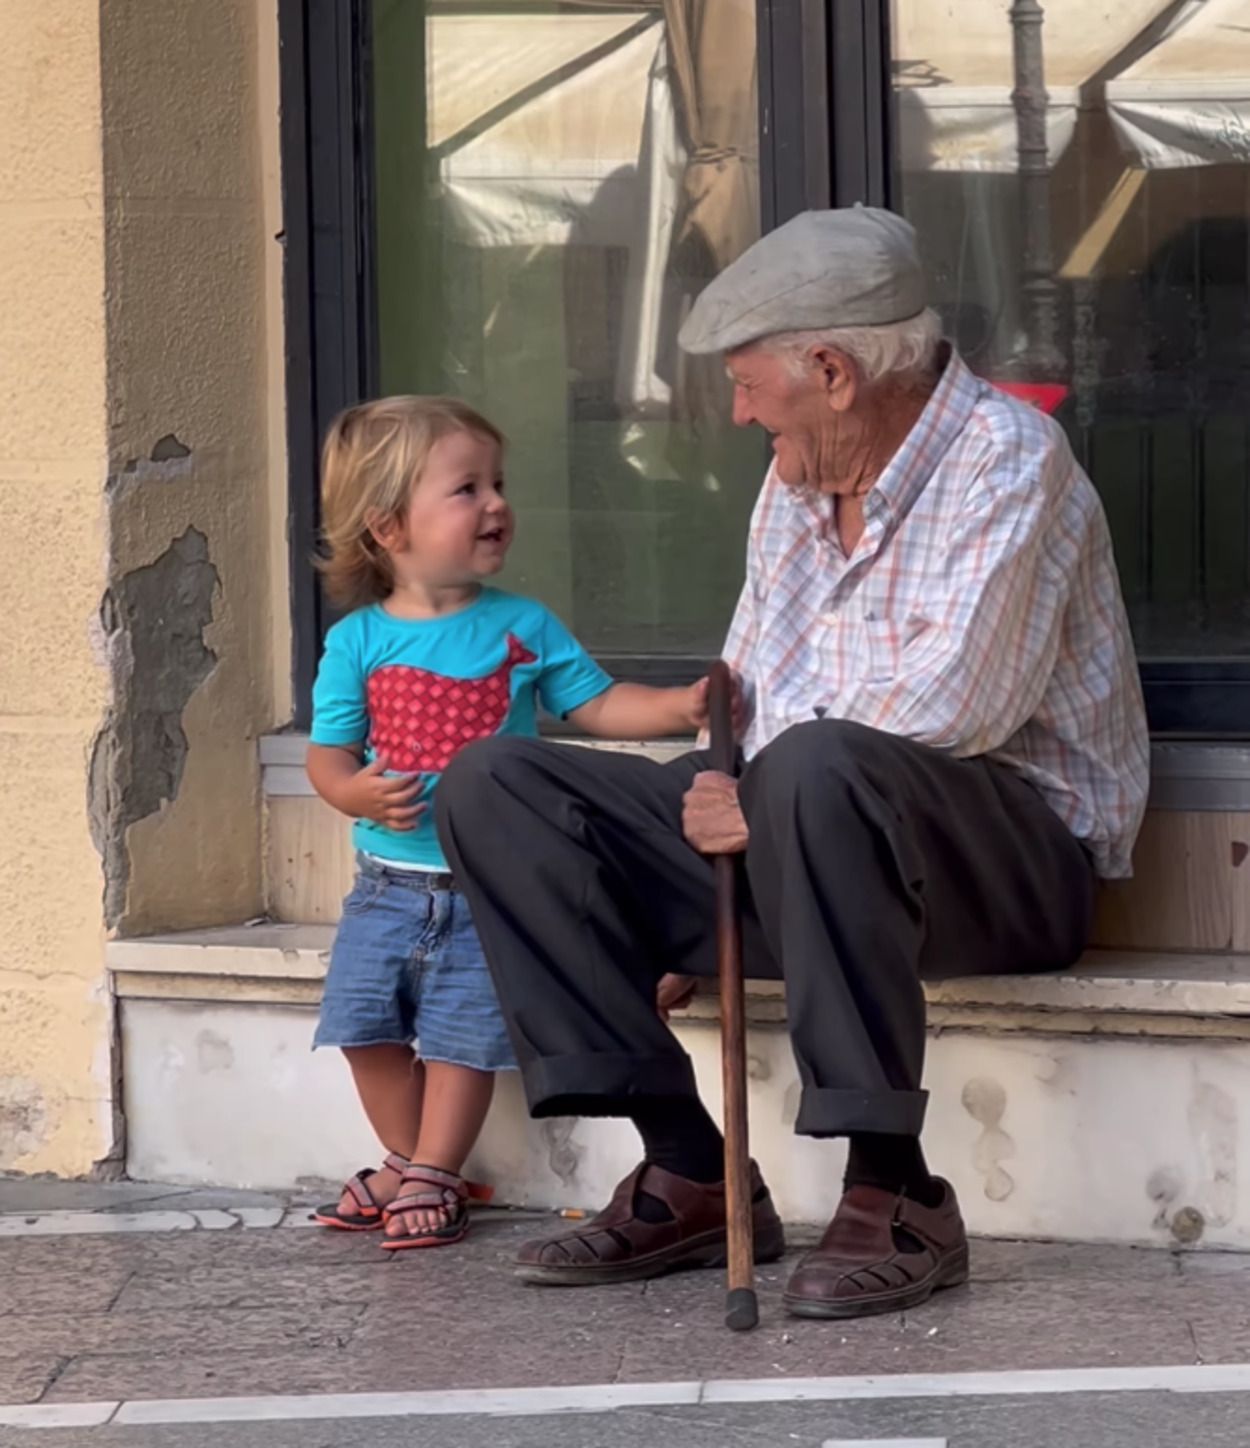 VÍDEO: La tierna escena entre un niño y un hombre mayor que ha dejado a todos sin palabras